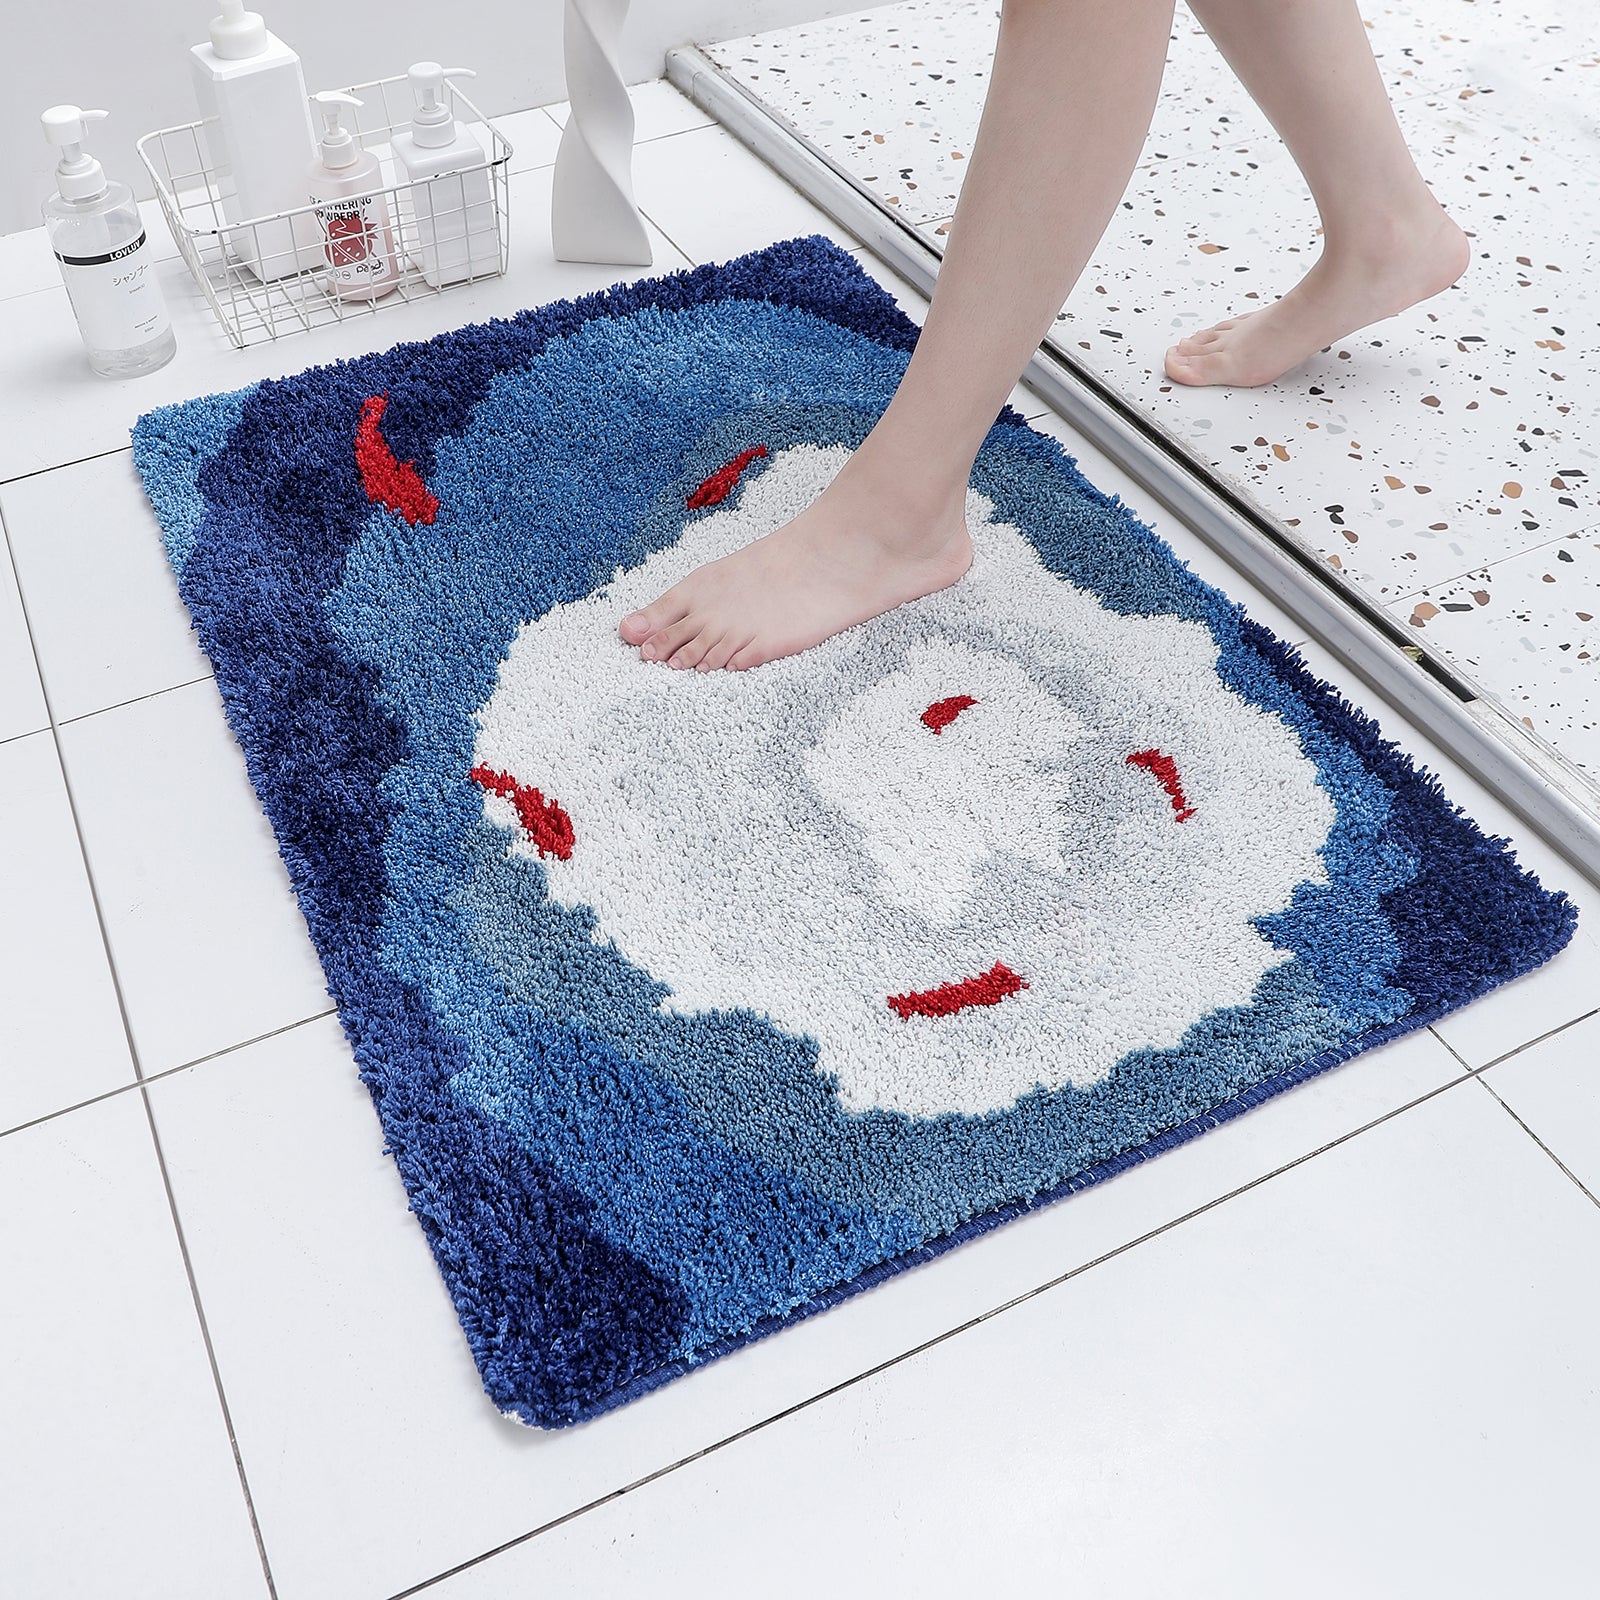 Fishpond Bathroom Mat, Red Koi in Pond Bath Mat, 60x90cm or 23x35 inches - Feblilac® Mat